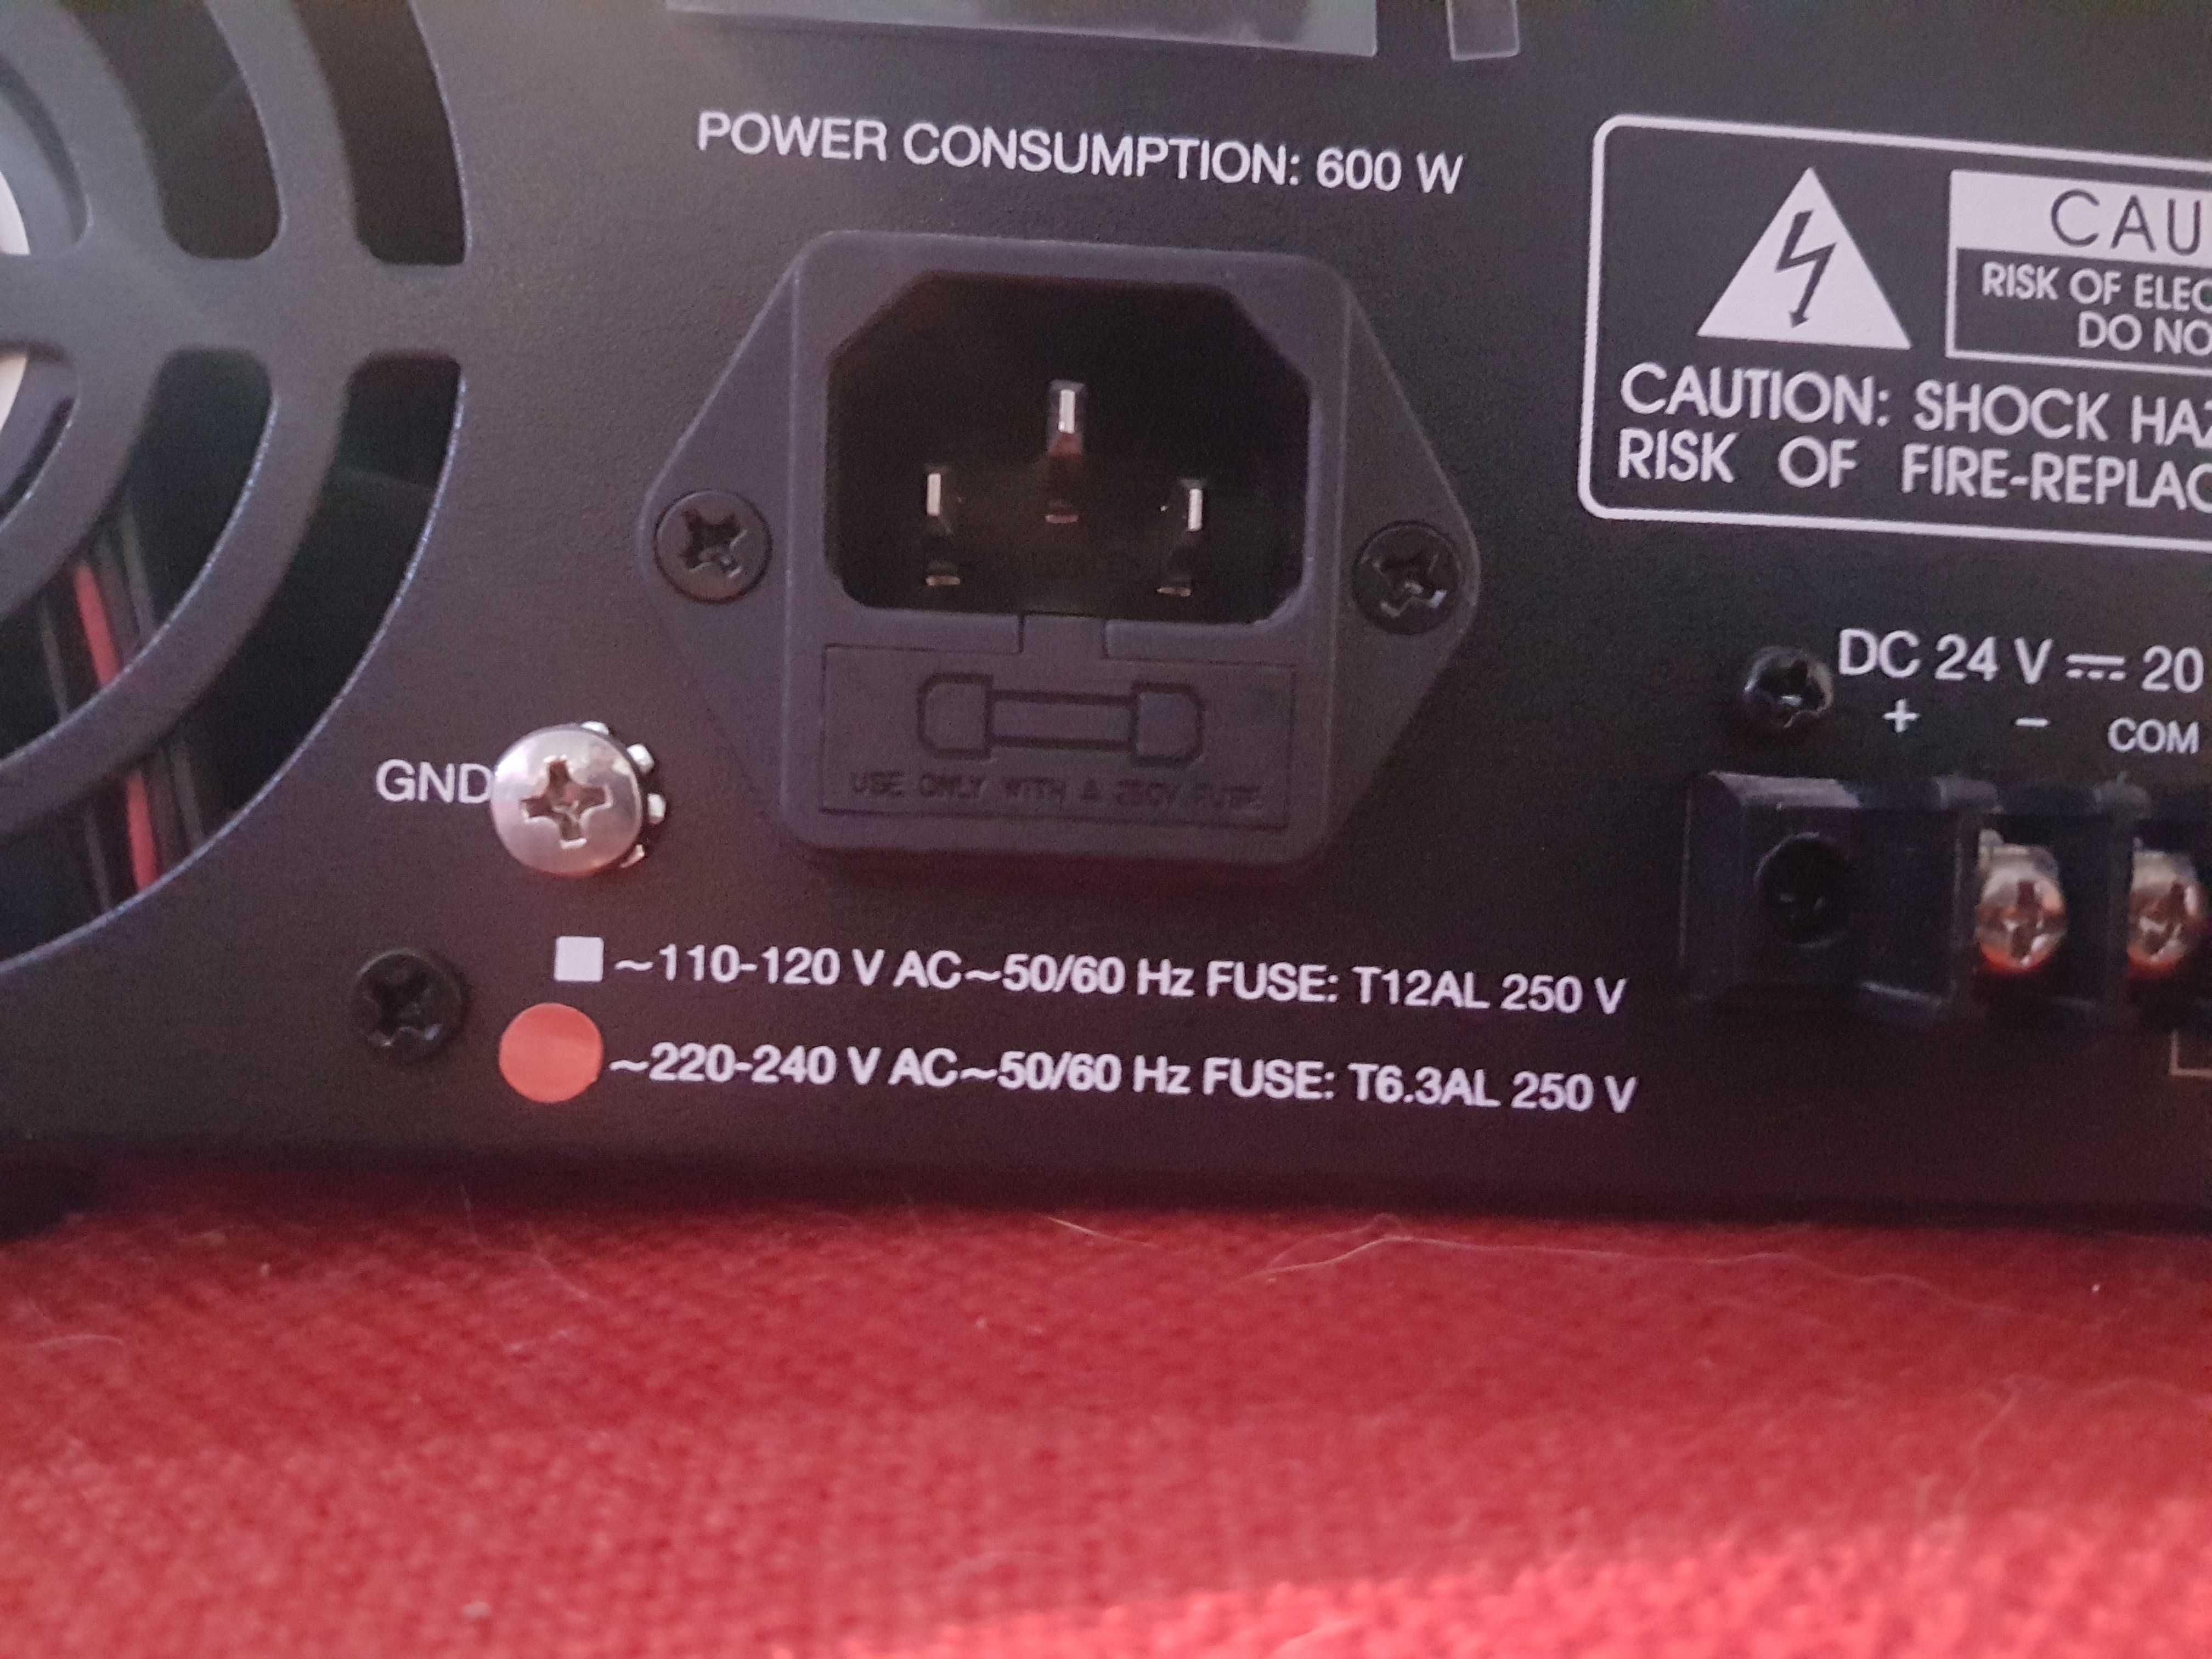 Amplificador de PA CID 240